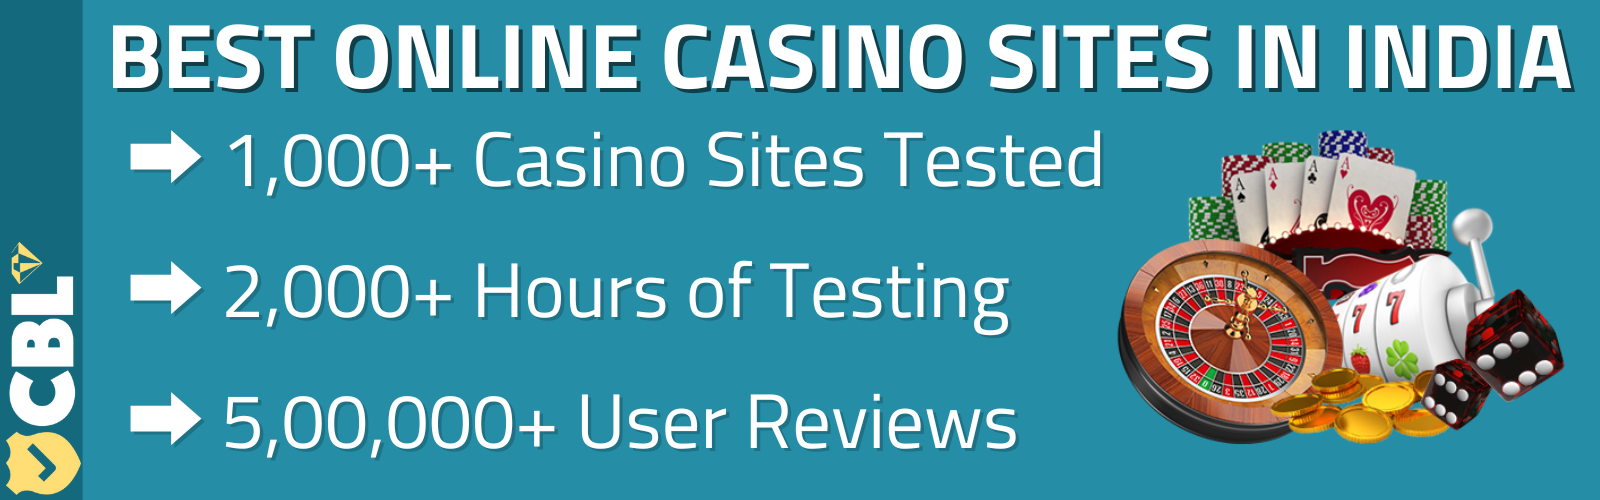 Best online casino india